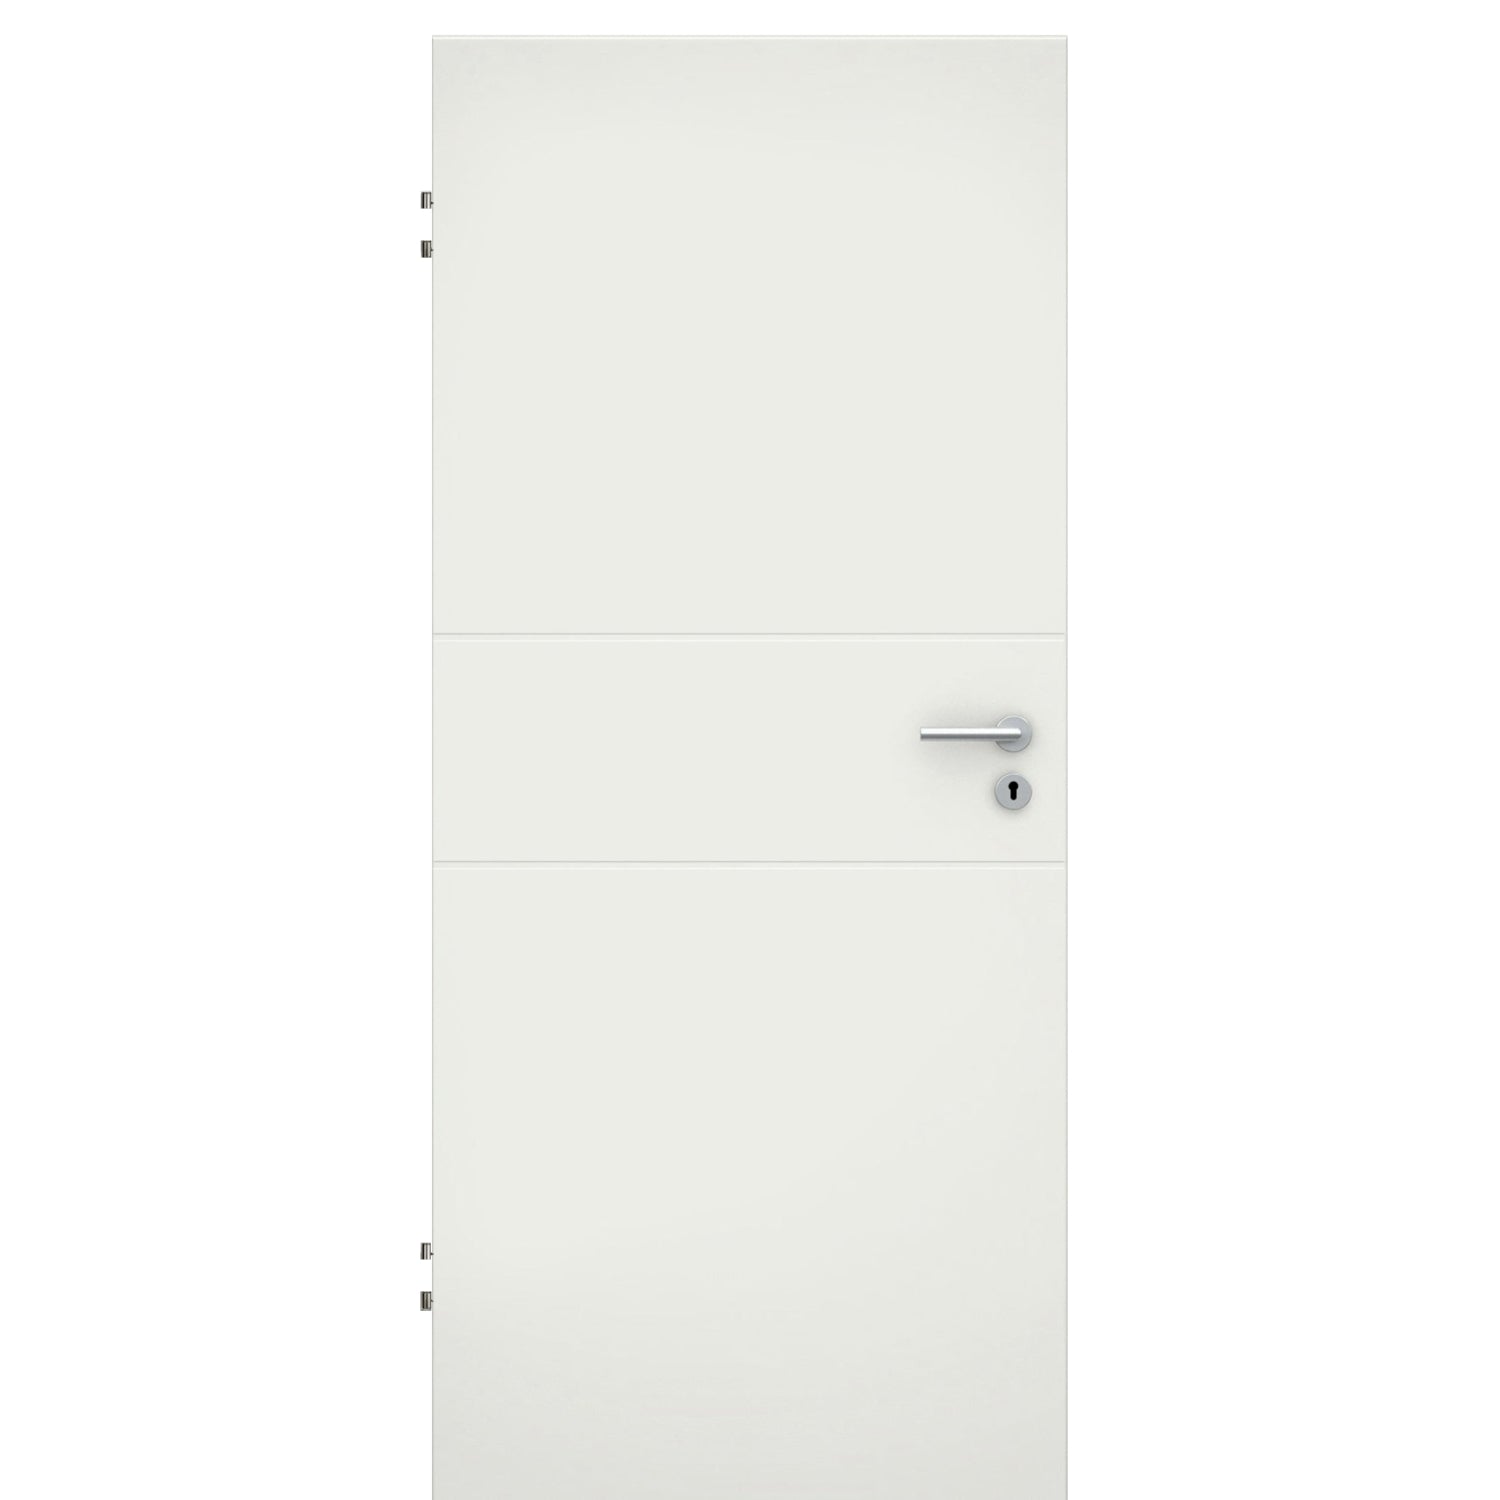 Wohnungseingangstür soft-weiß 2 Rillen Eckkante SK2 / KK3 - Modell Designtür Q21